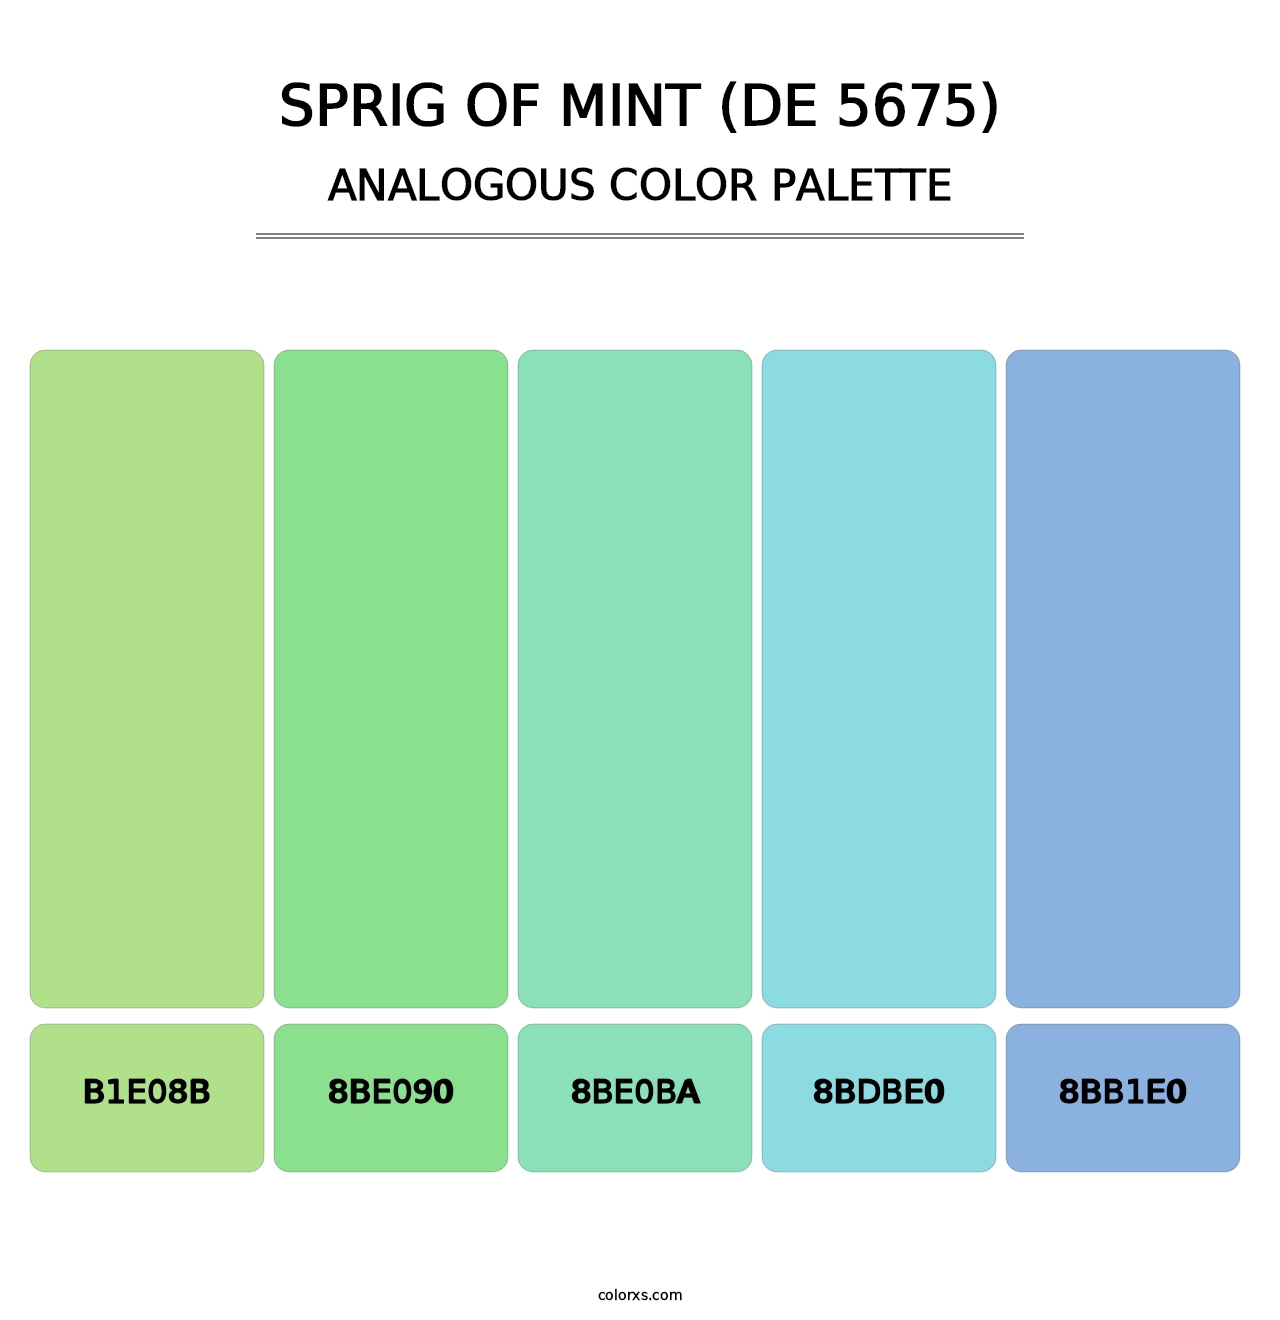 Sprig of Mint (DE 5675) - Analogous Color Palette